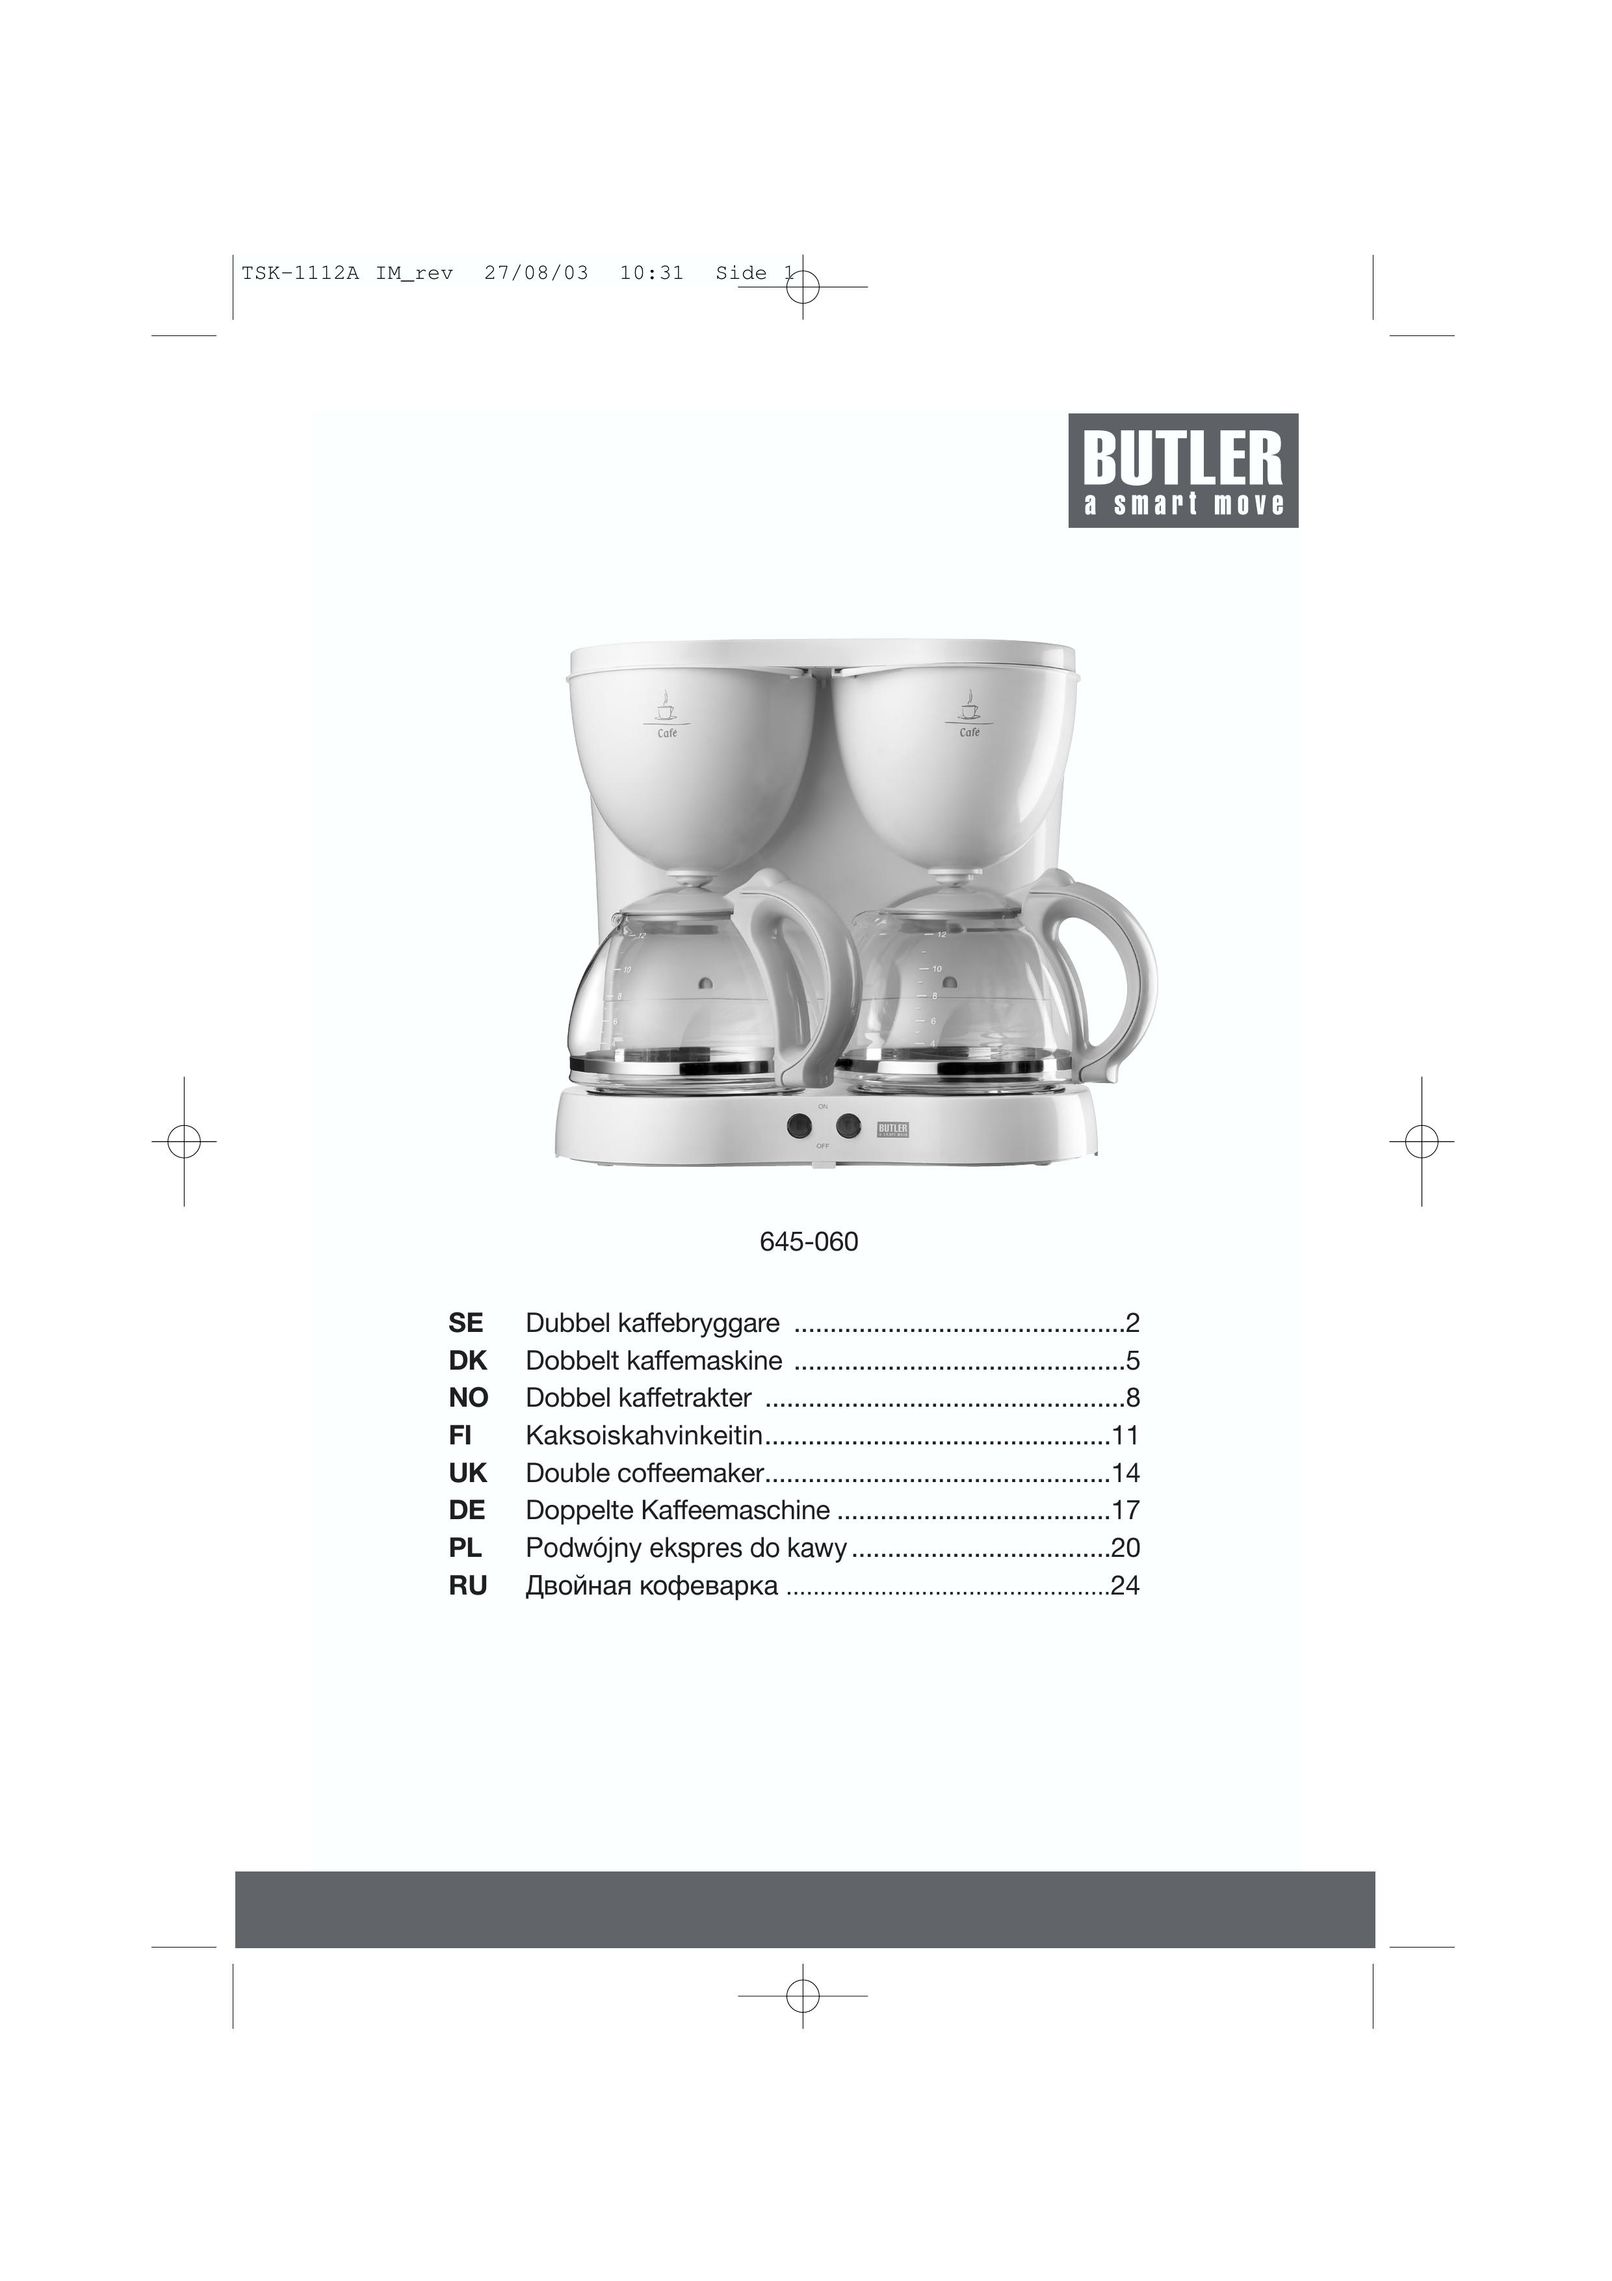 Butler 645-060 Coffeemaker User Manual